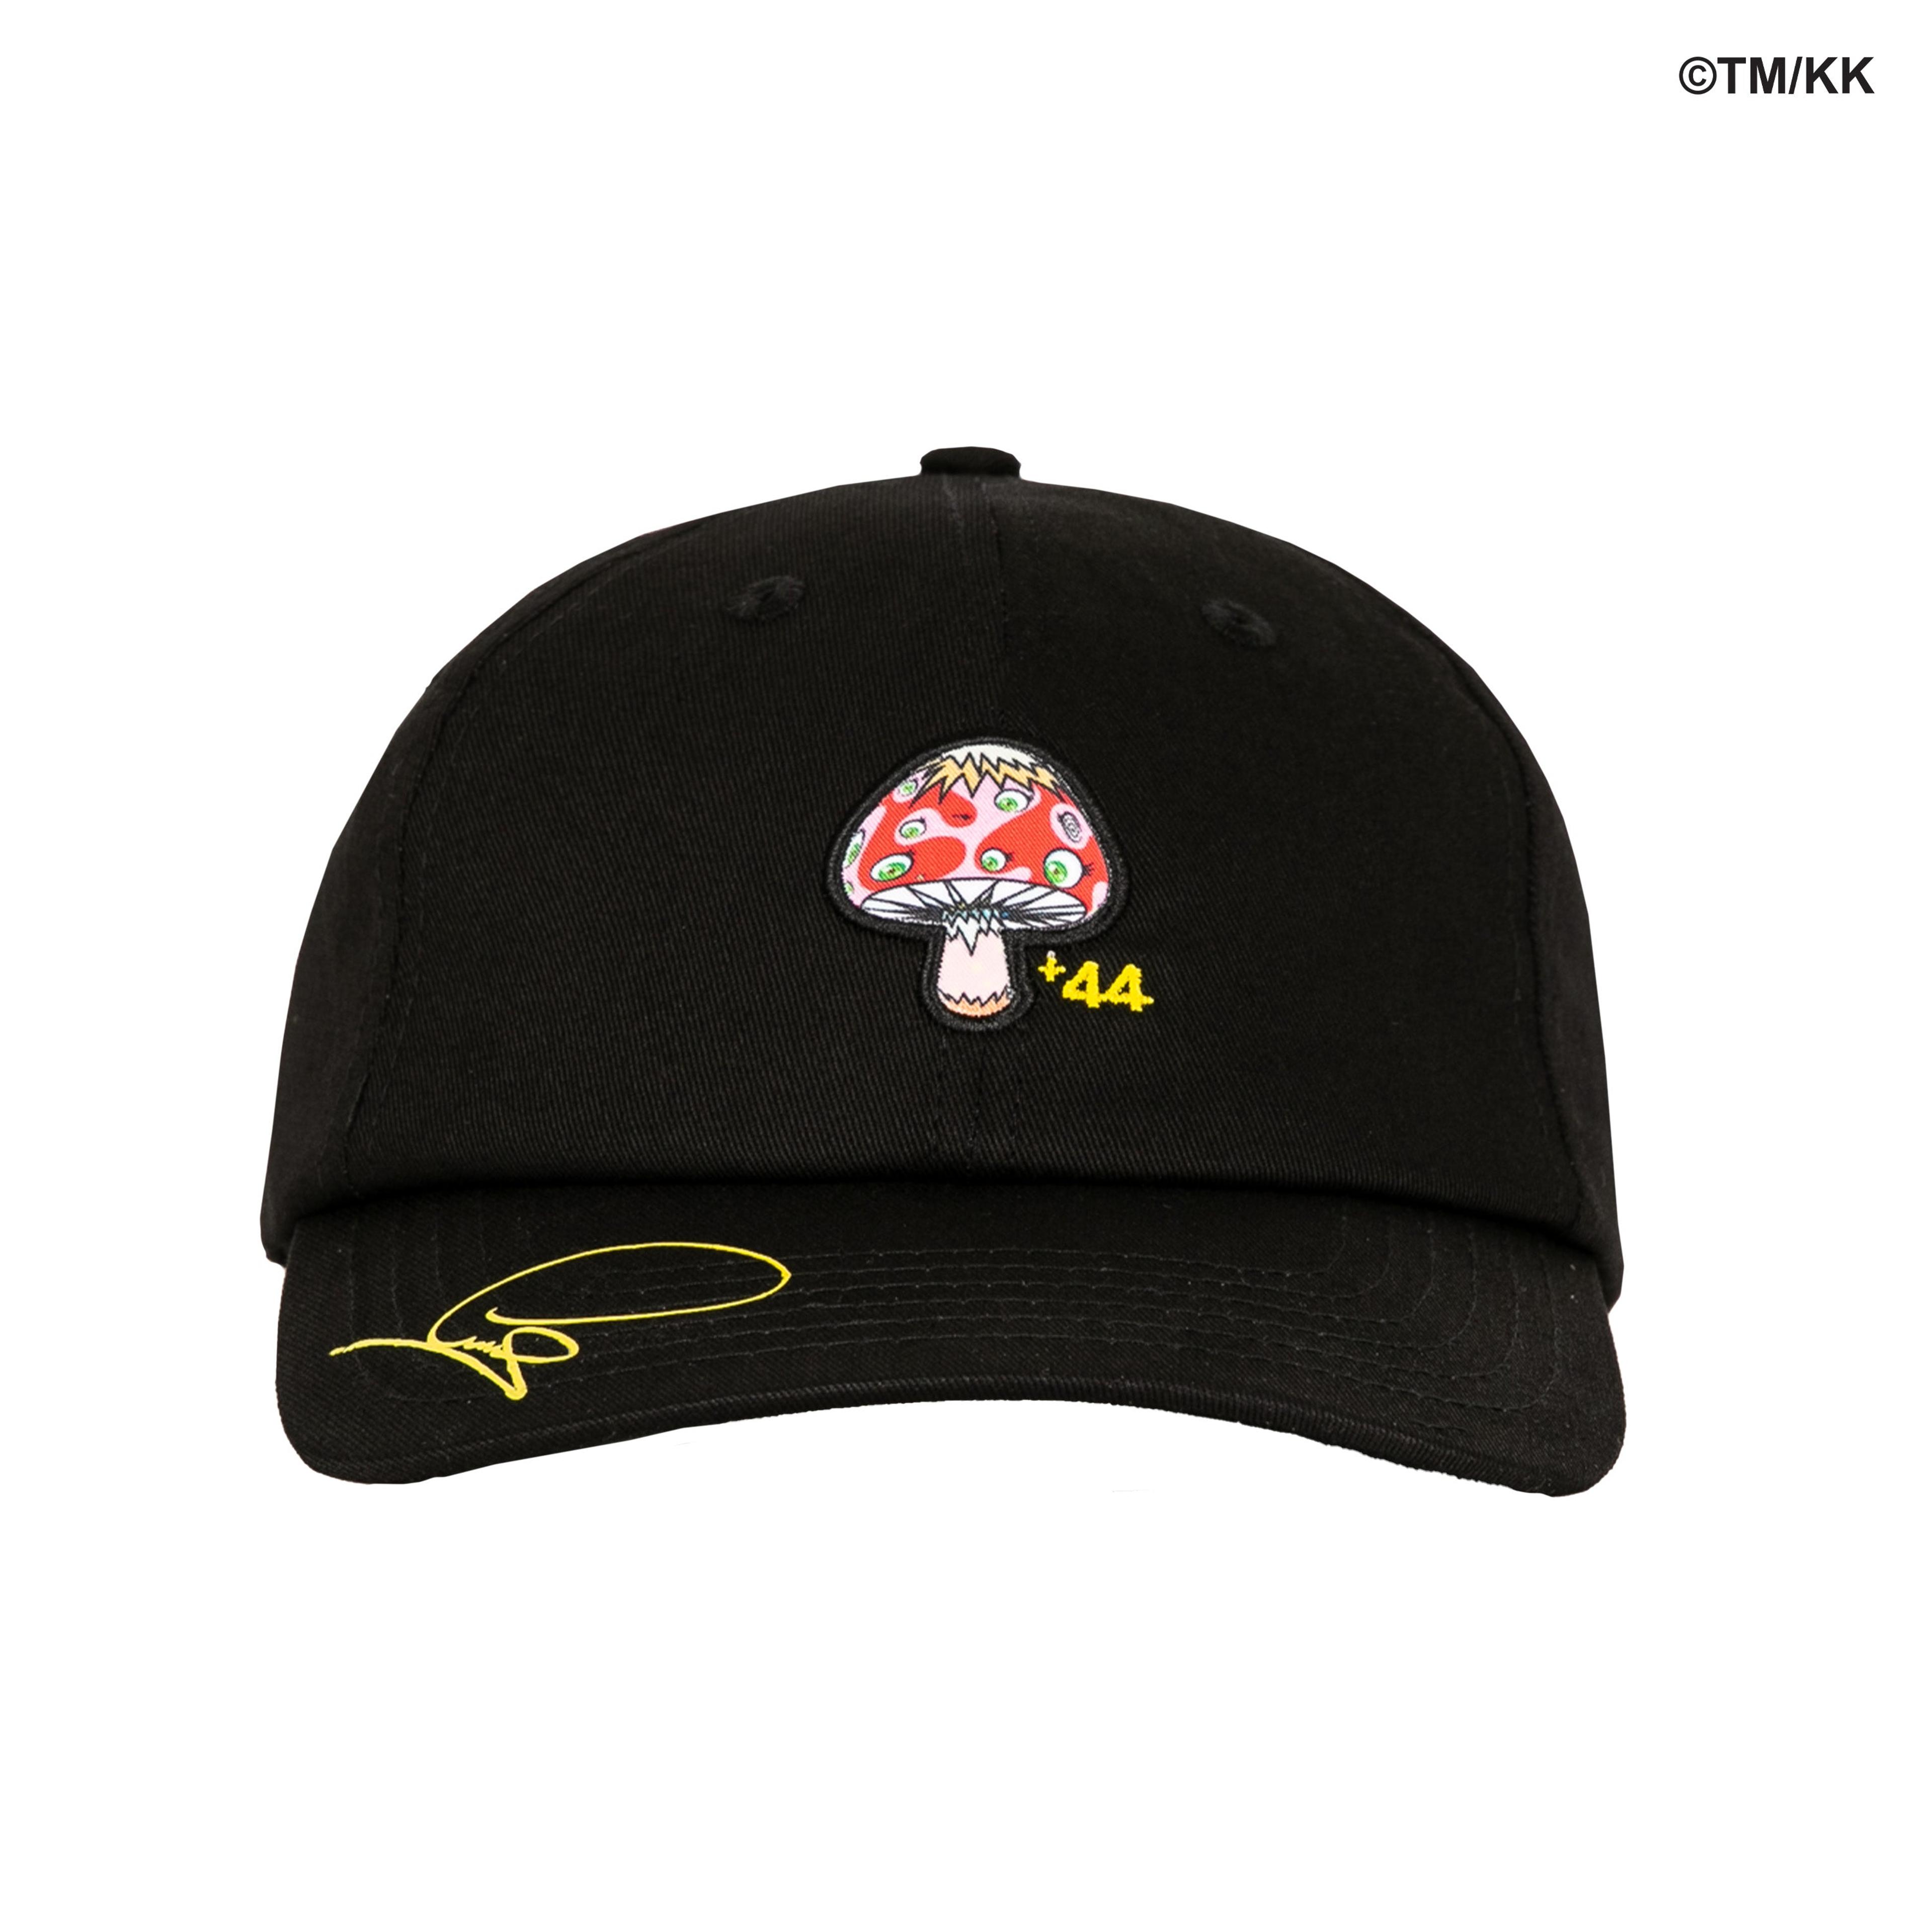 +44 + Takashi Murakami Signature Hat